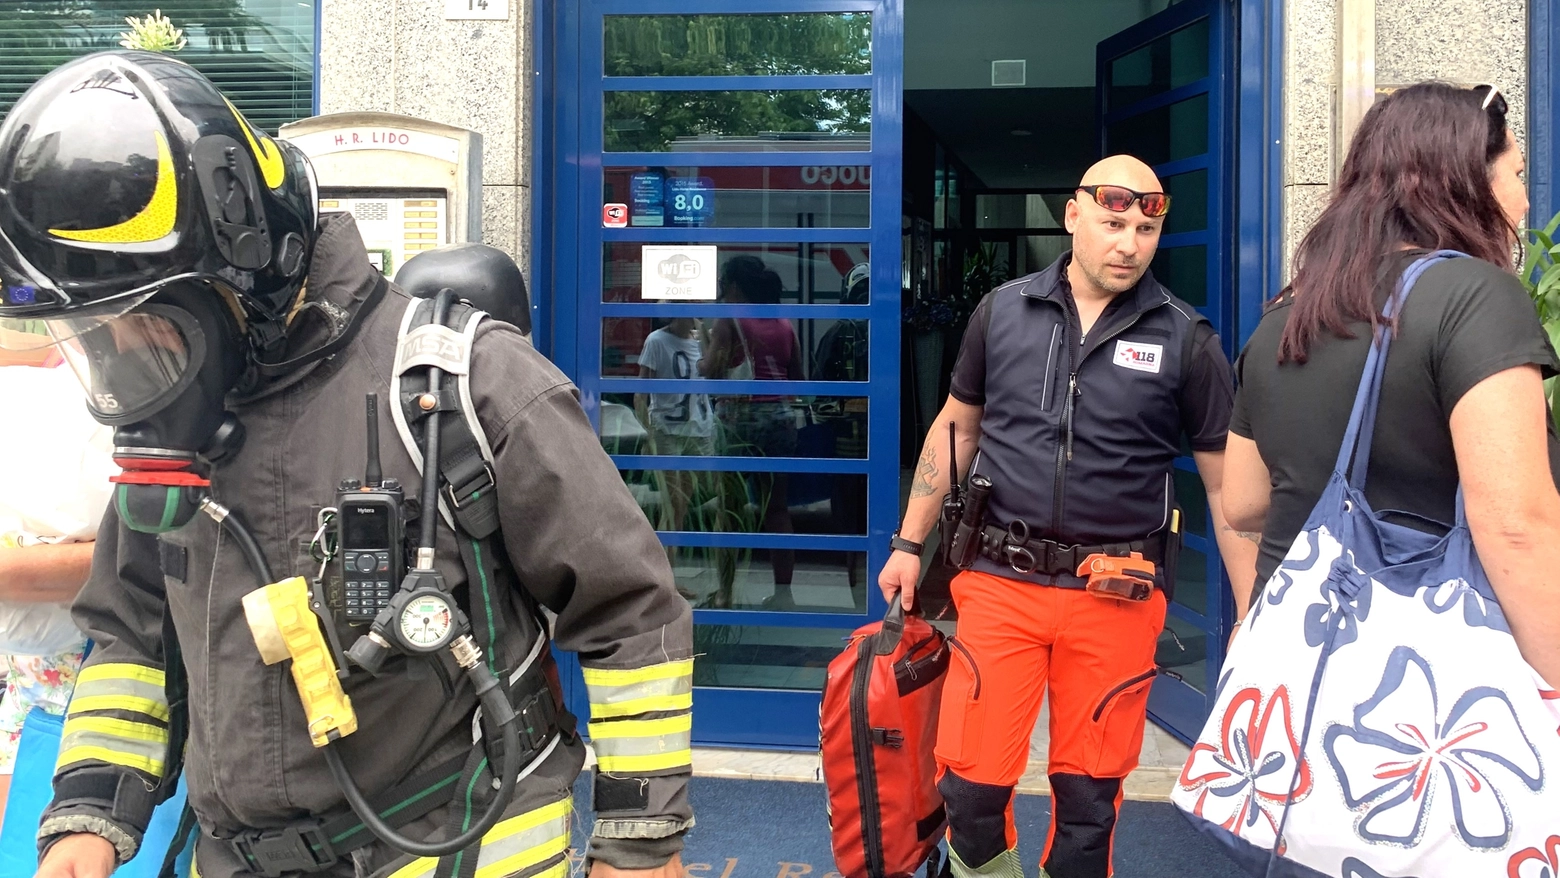 L'intervento dei Vigili del fuoco all'Hotel Residenza Lido di Cesenatico: venti gli evacuati che sono potuti rientrare nelle camere dopo l'intervento dei pompieri